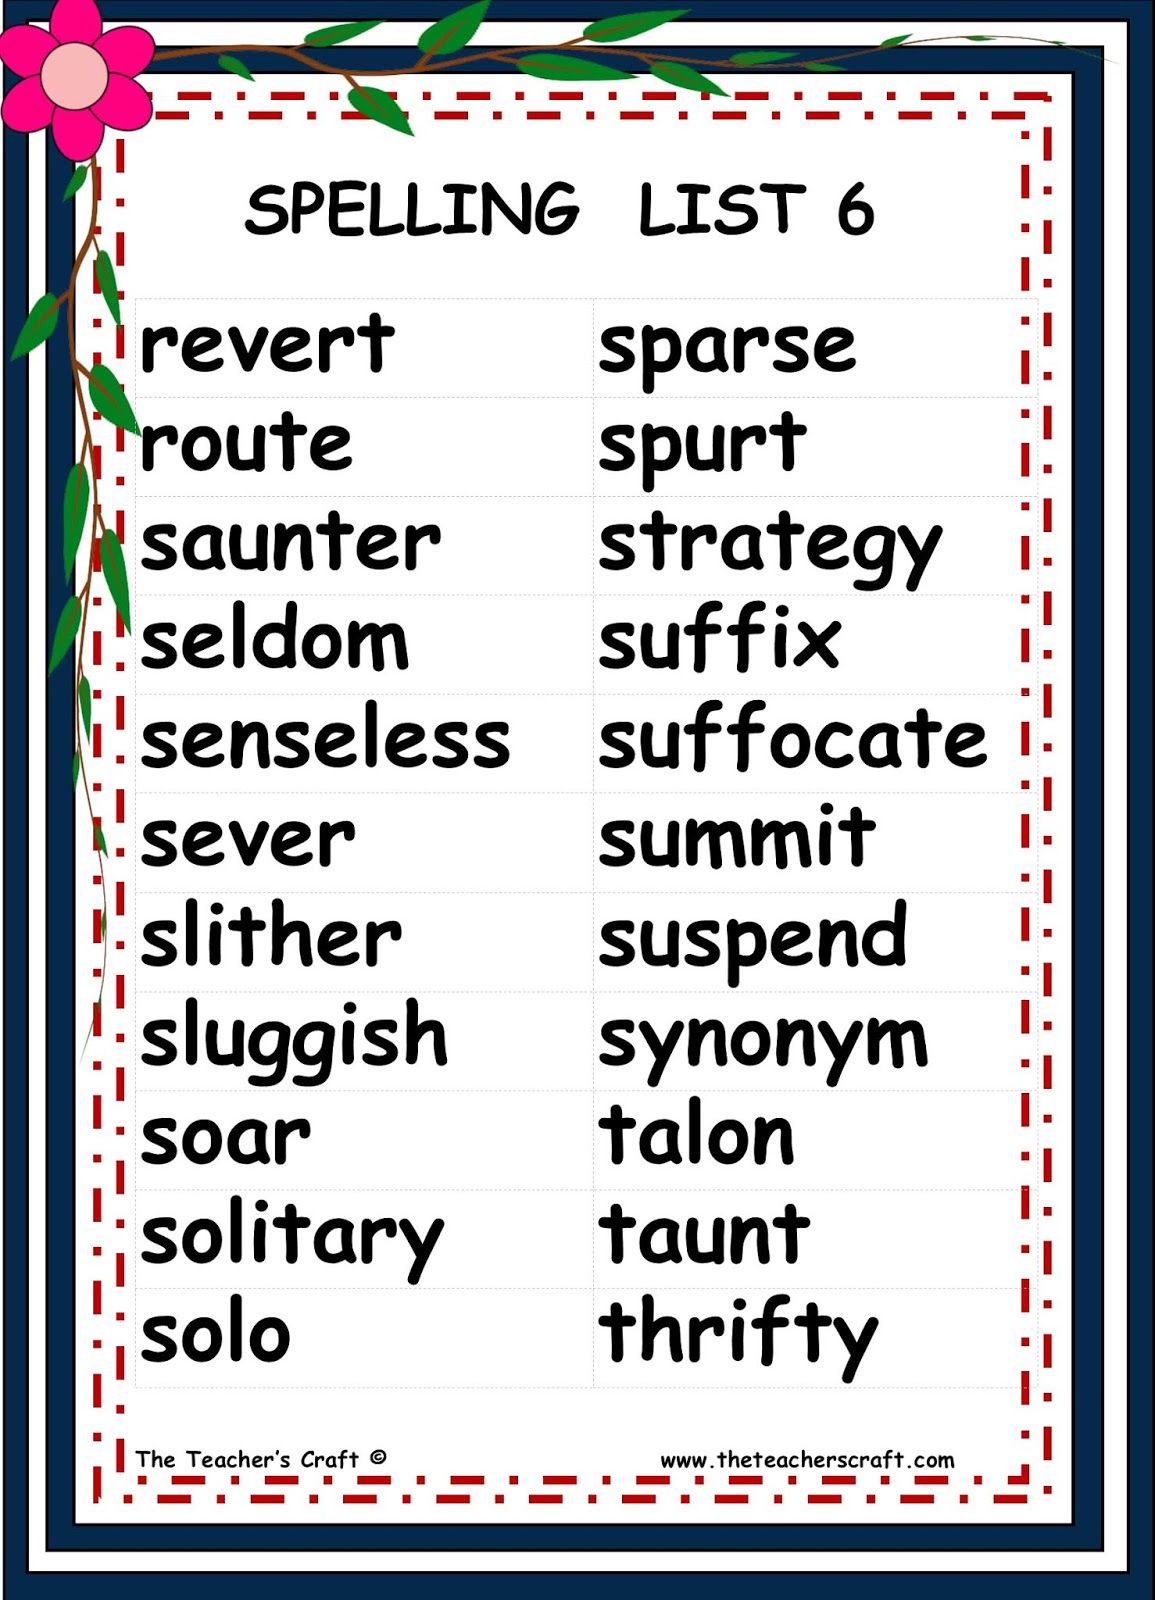 Spelling List for Intermediate Level - The Teacher's Craft